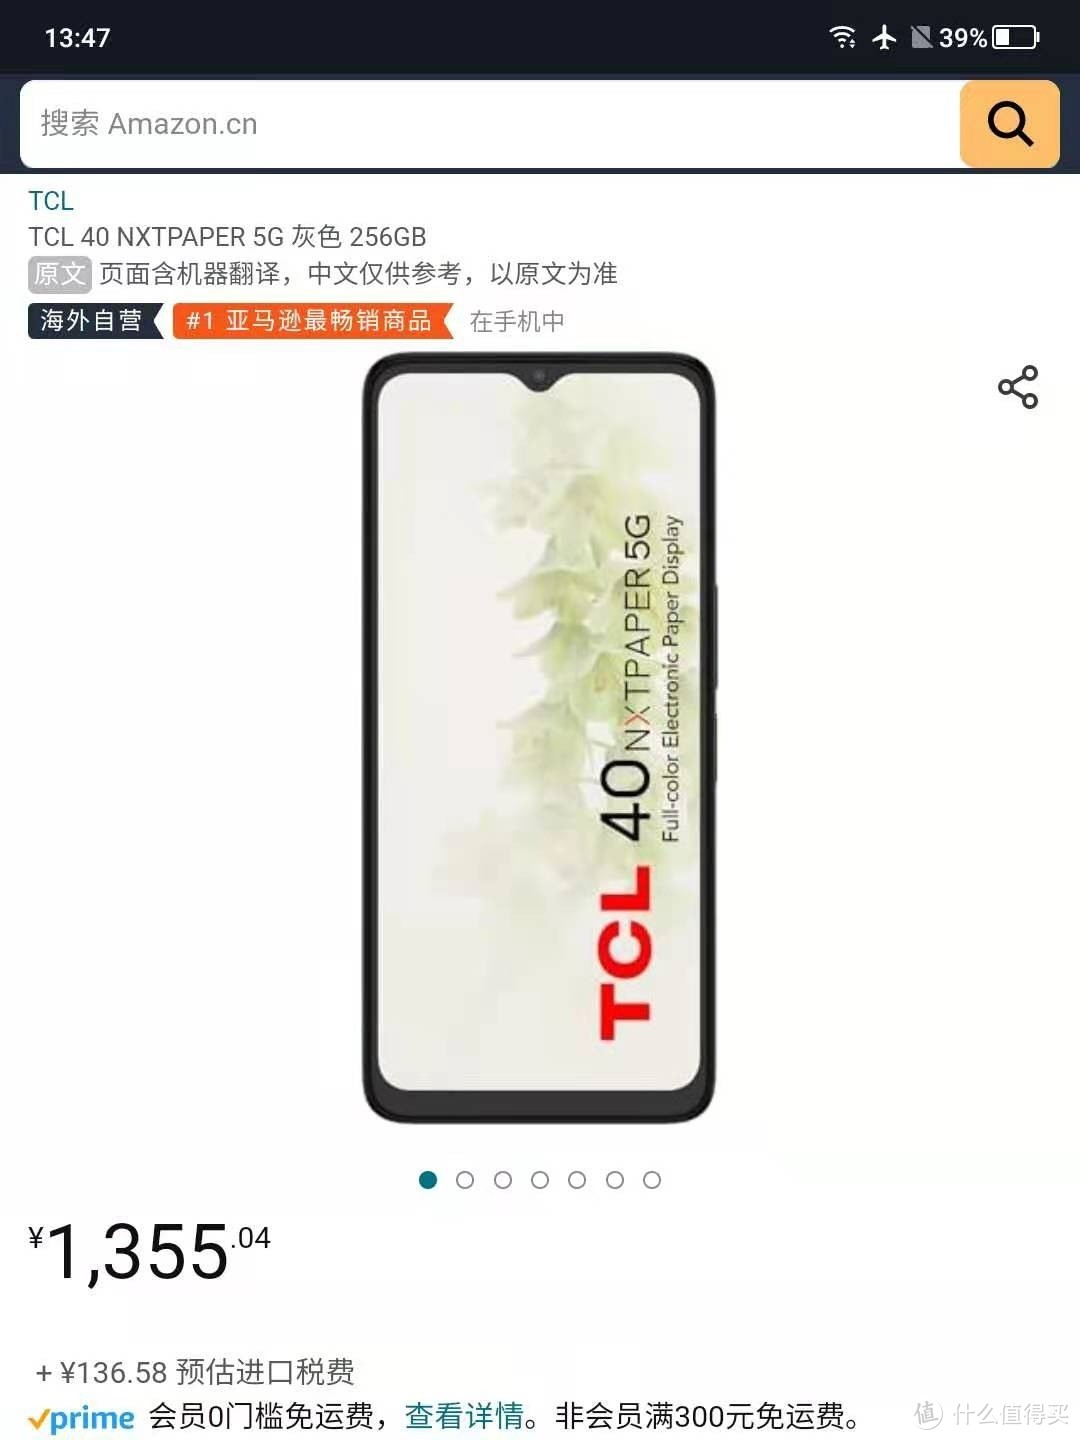 【国内下单】亚马逊中国上架 tcl 40 nexpaper 支持微信和支付宝并且享有正规售后若有质量和瑕疵包退换